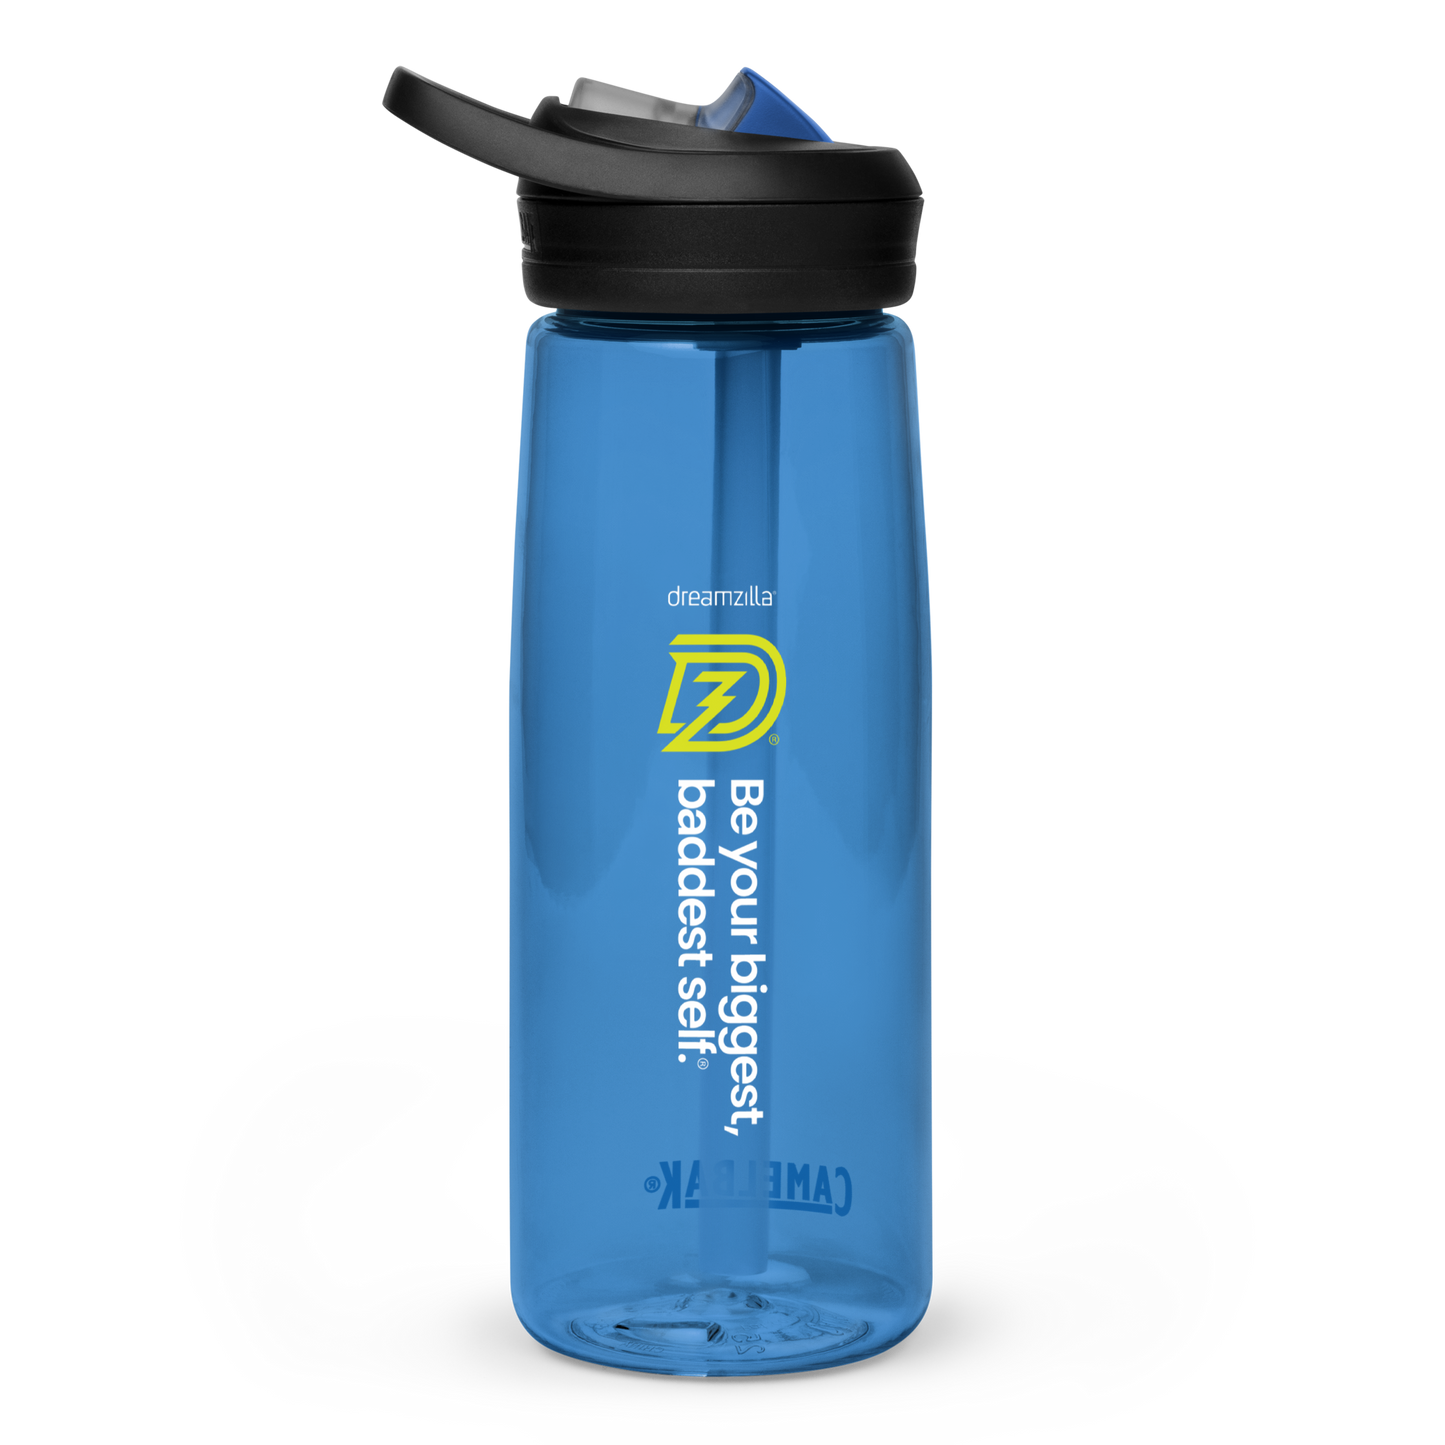 Dreamzilla Sports Water Bottle